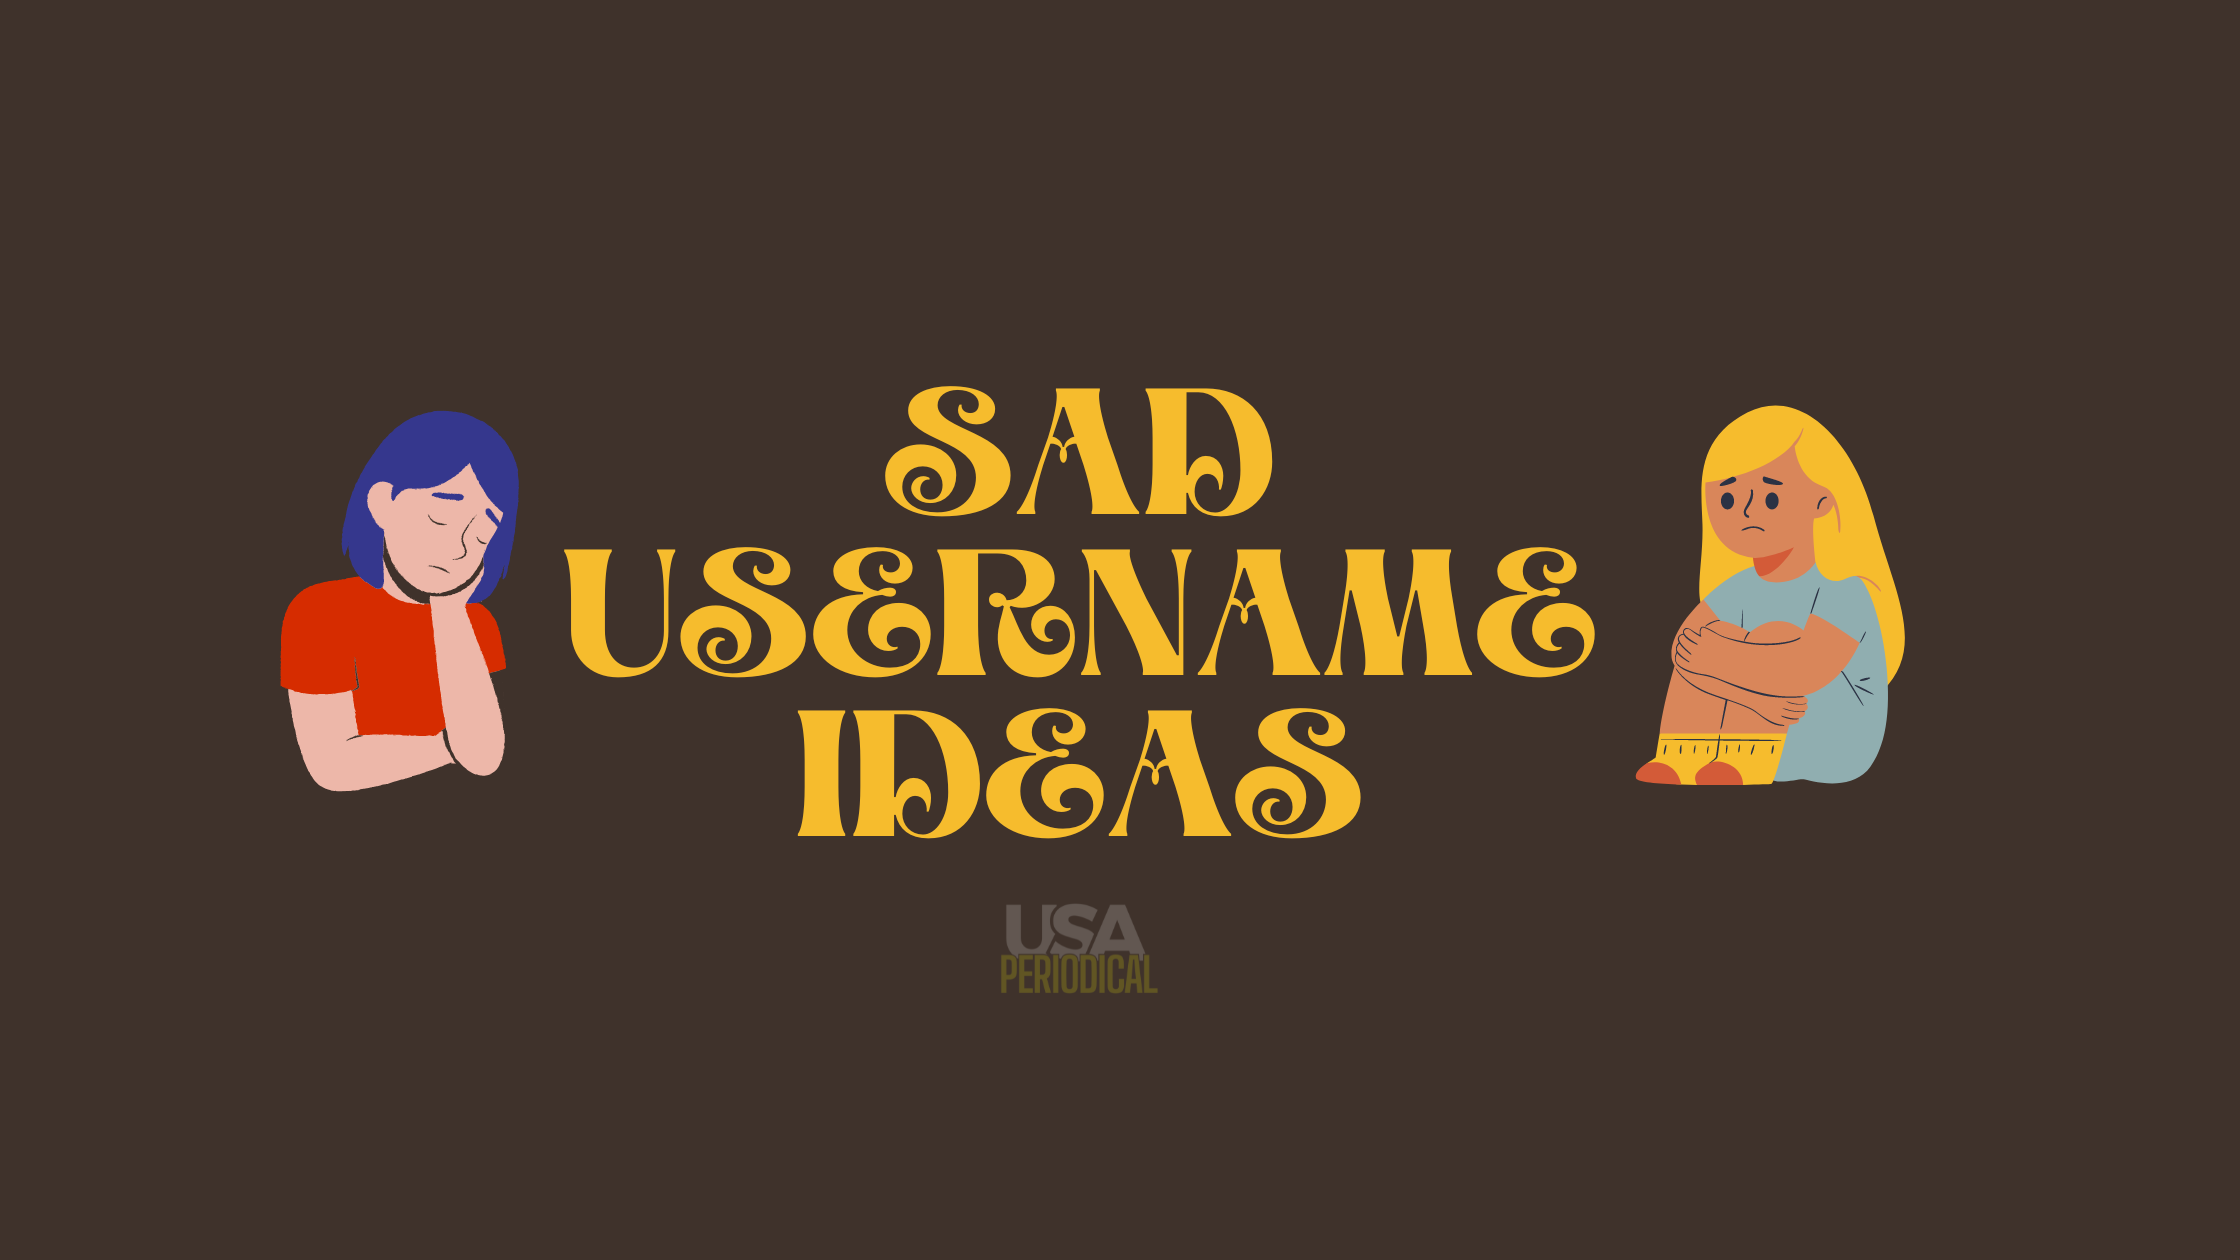 sad username ideas